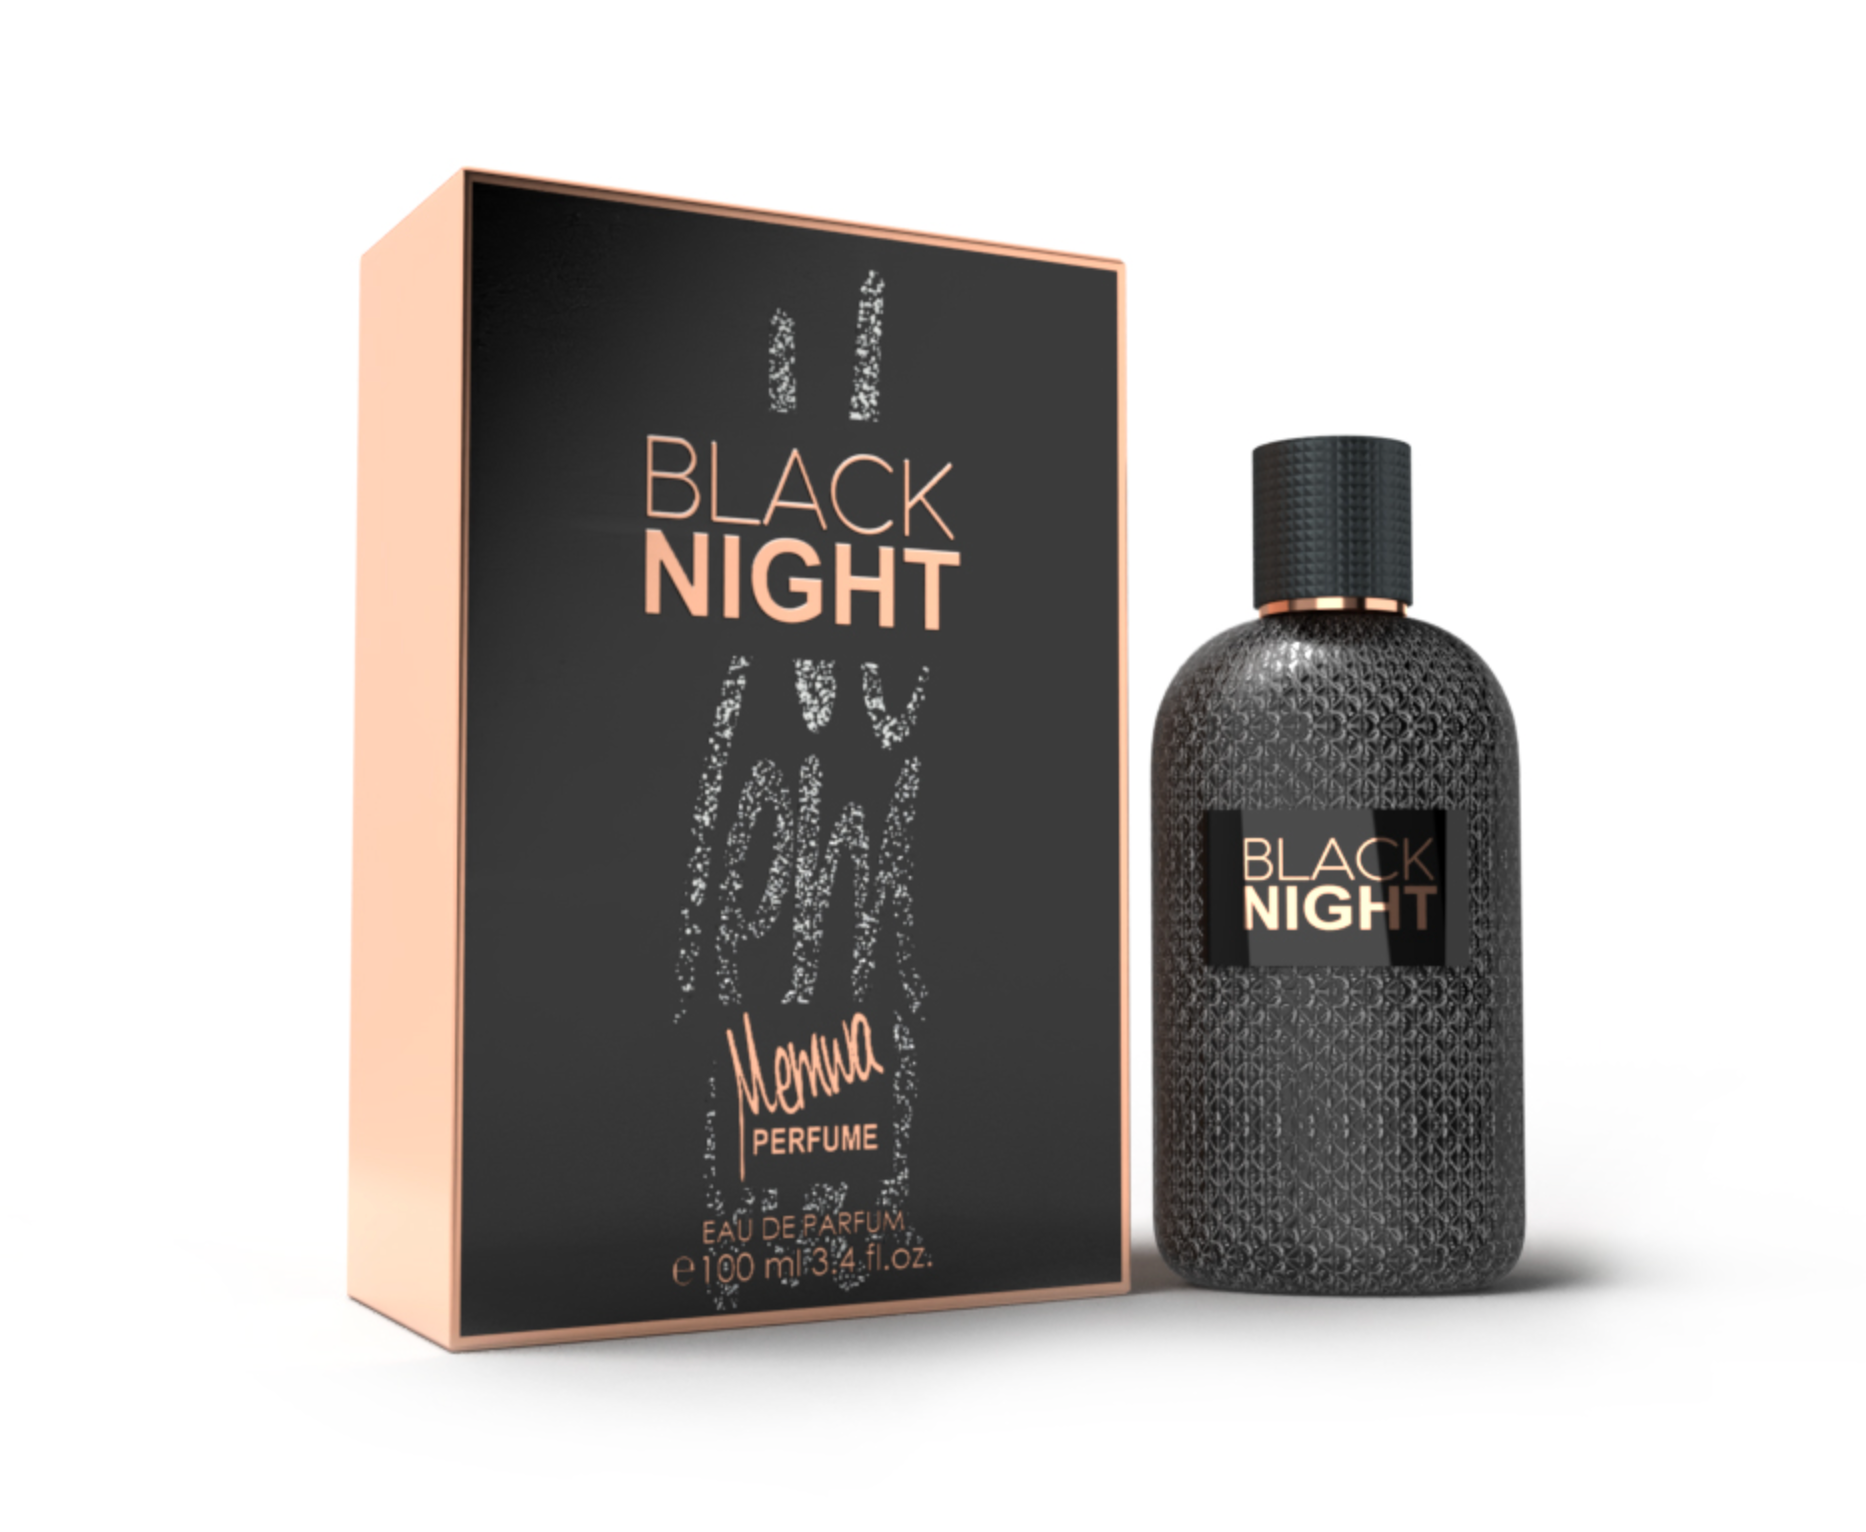 Black Night - Memwa EUA de Parfum